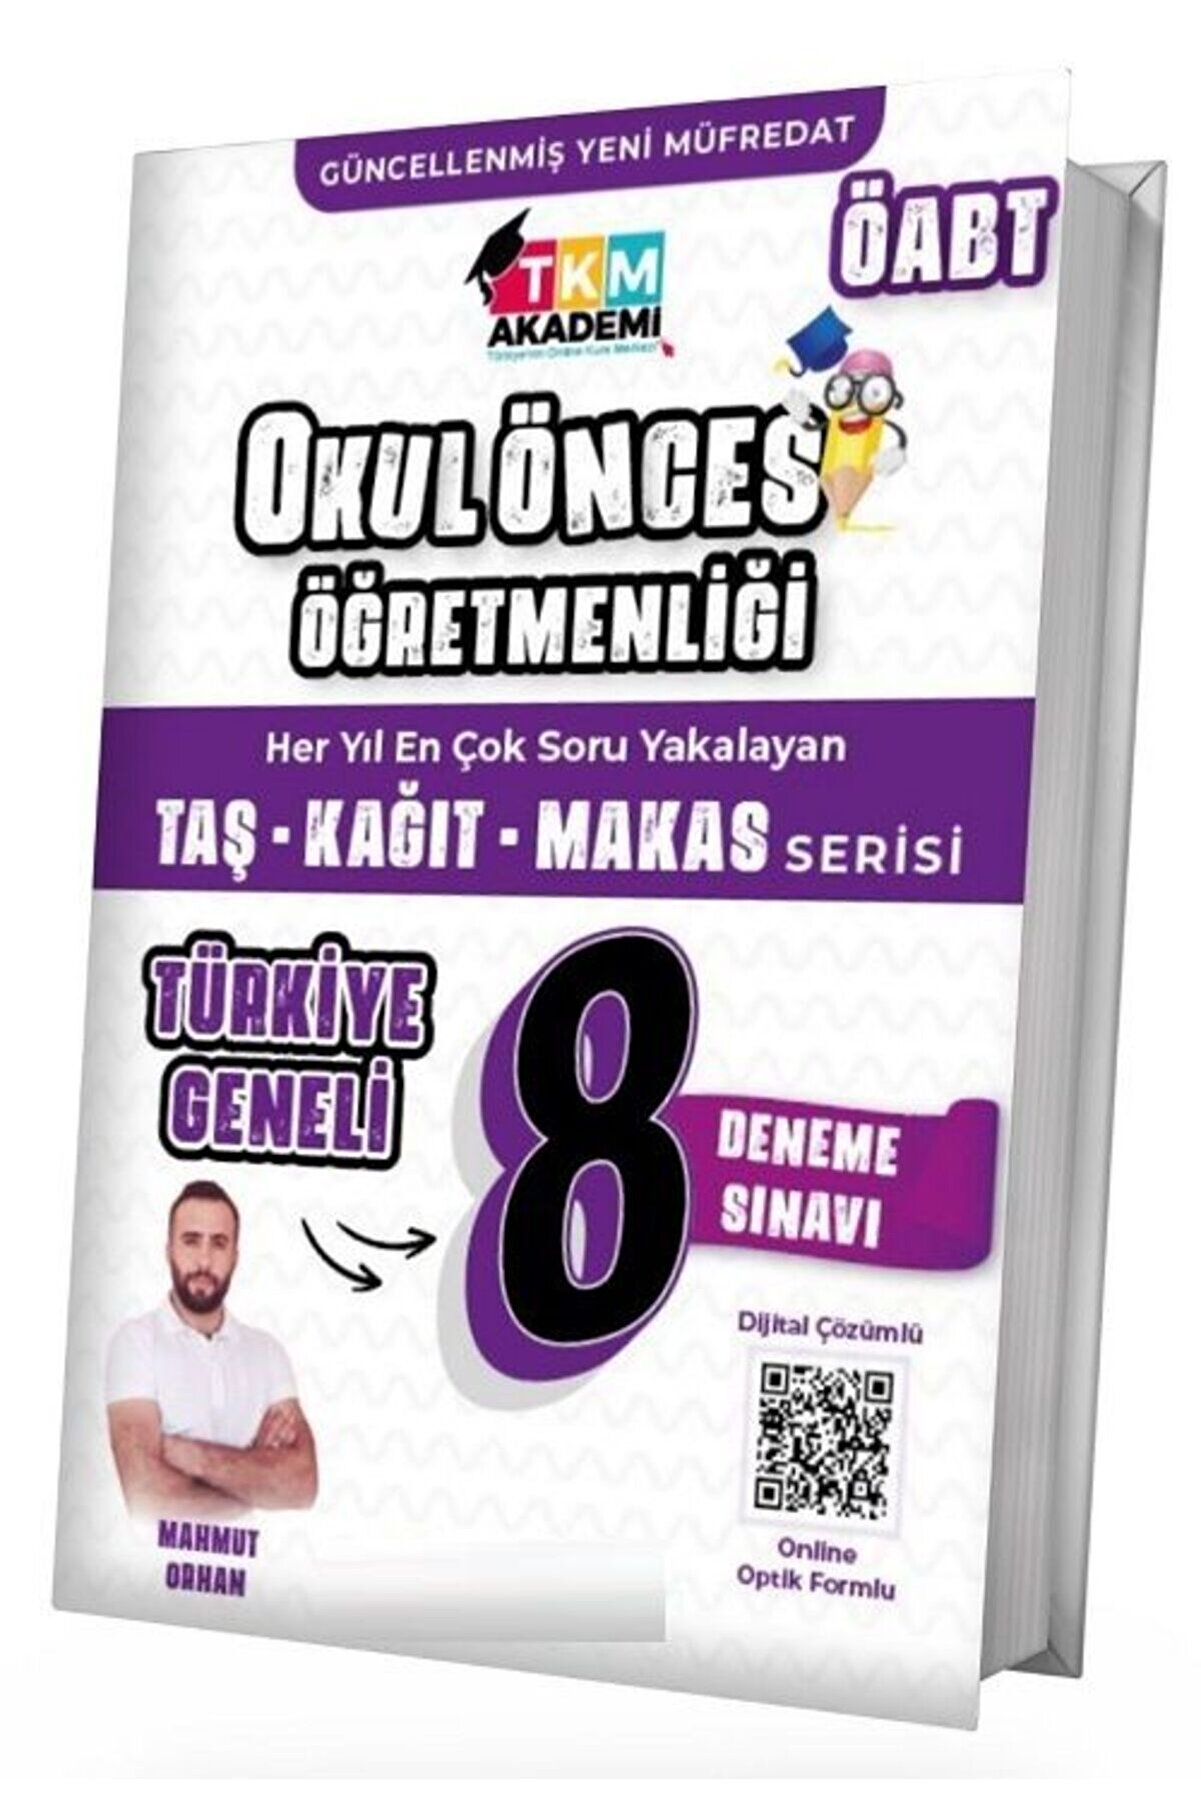 TKM Akademi Öabt Okul Öncesi Türkiye Geneli 8 Deneme Dijital Çözümlü - Mahmut Orhan